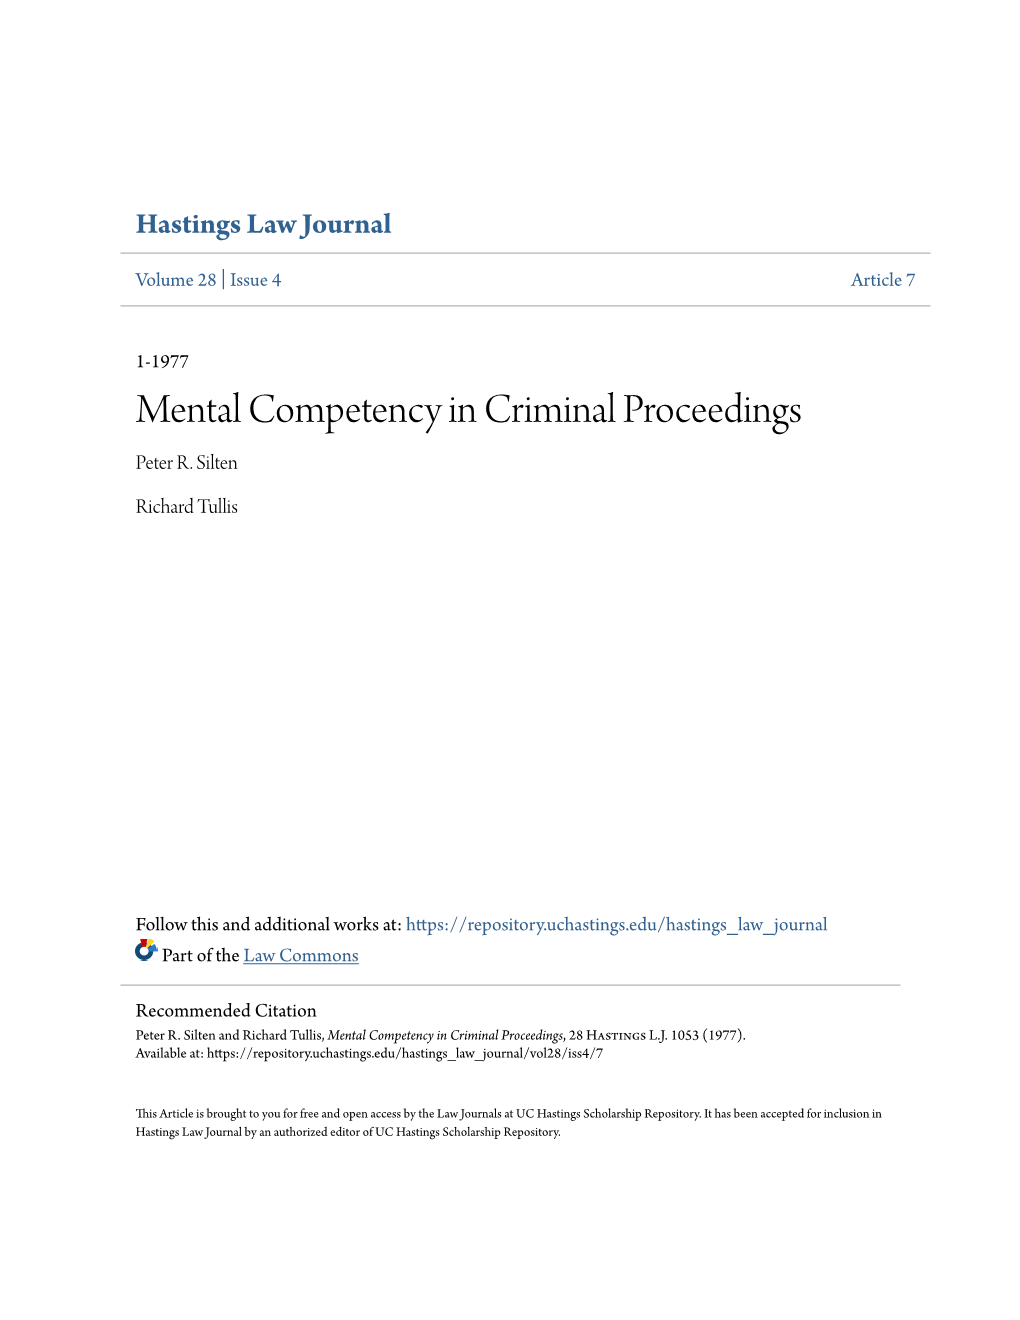 Mental Competency in Criminal Proceedings Peter R